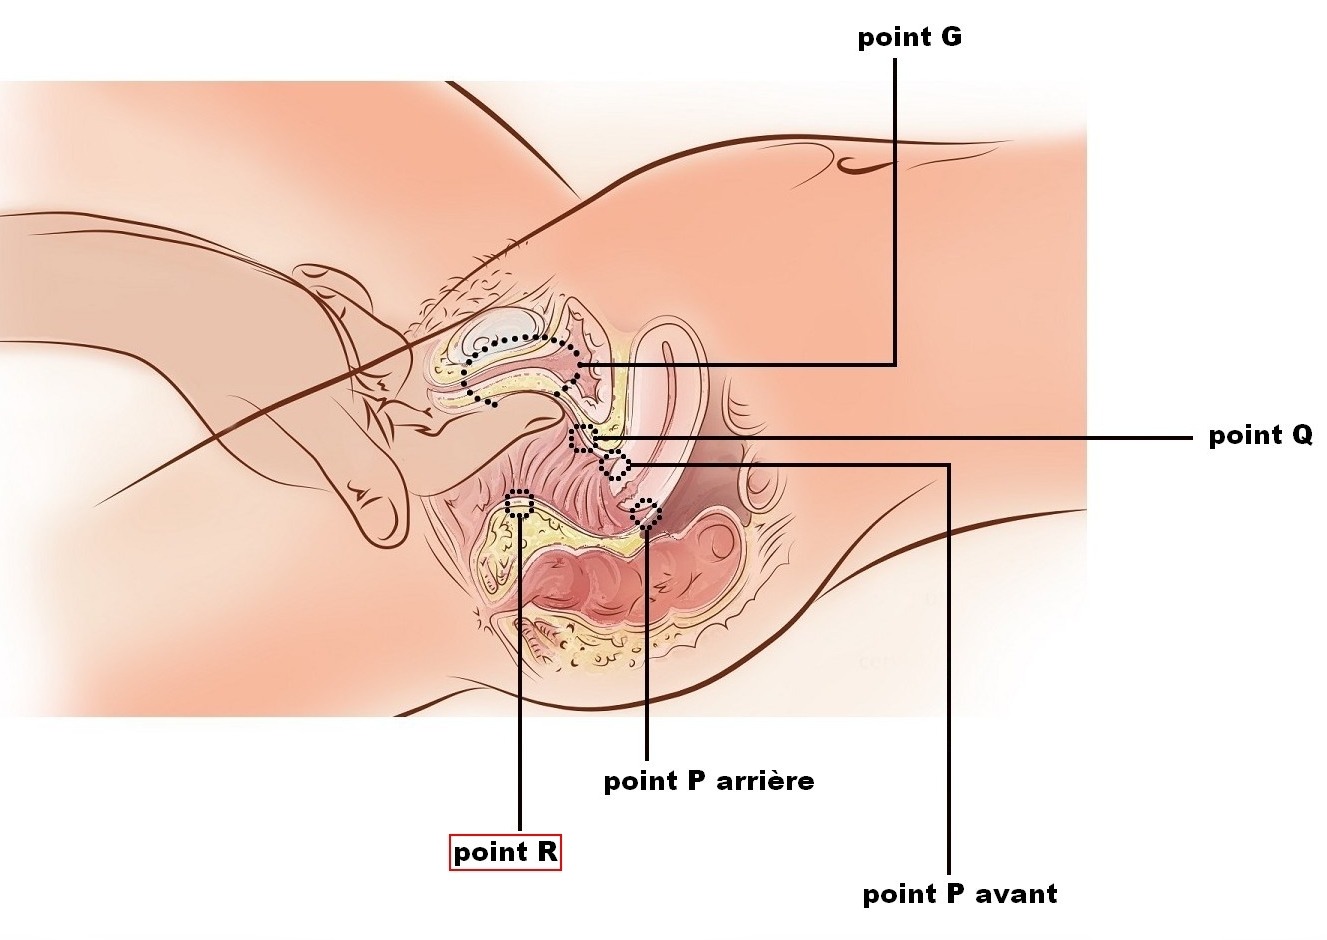 Le point R à stimuler par l'anus ou le vagin